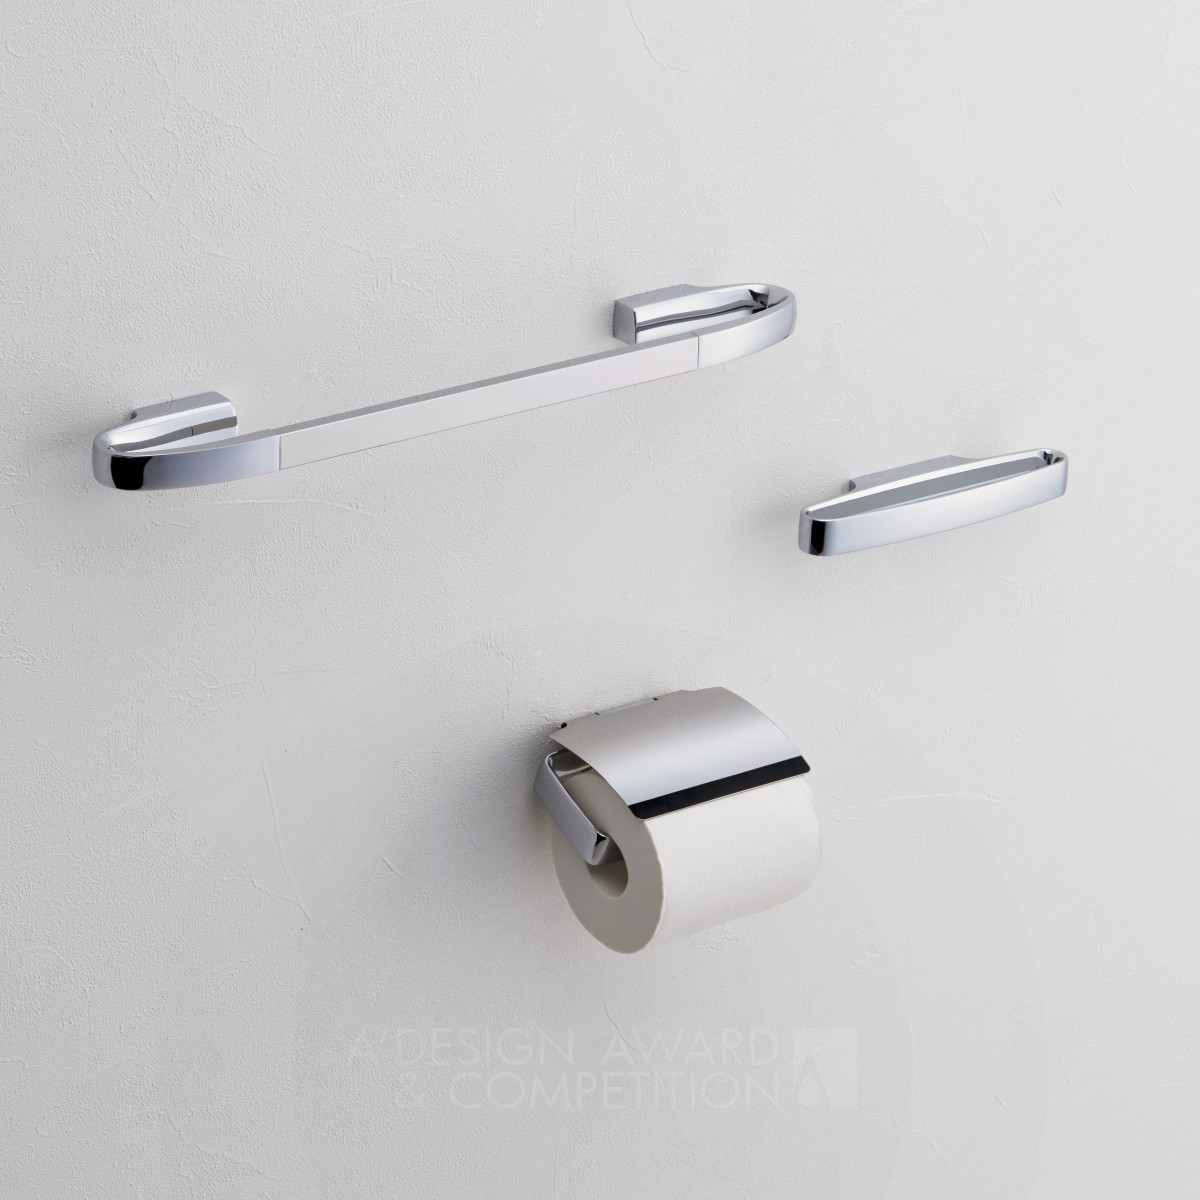 R2300 Series <b>Space saving bathroom accessories